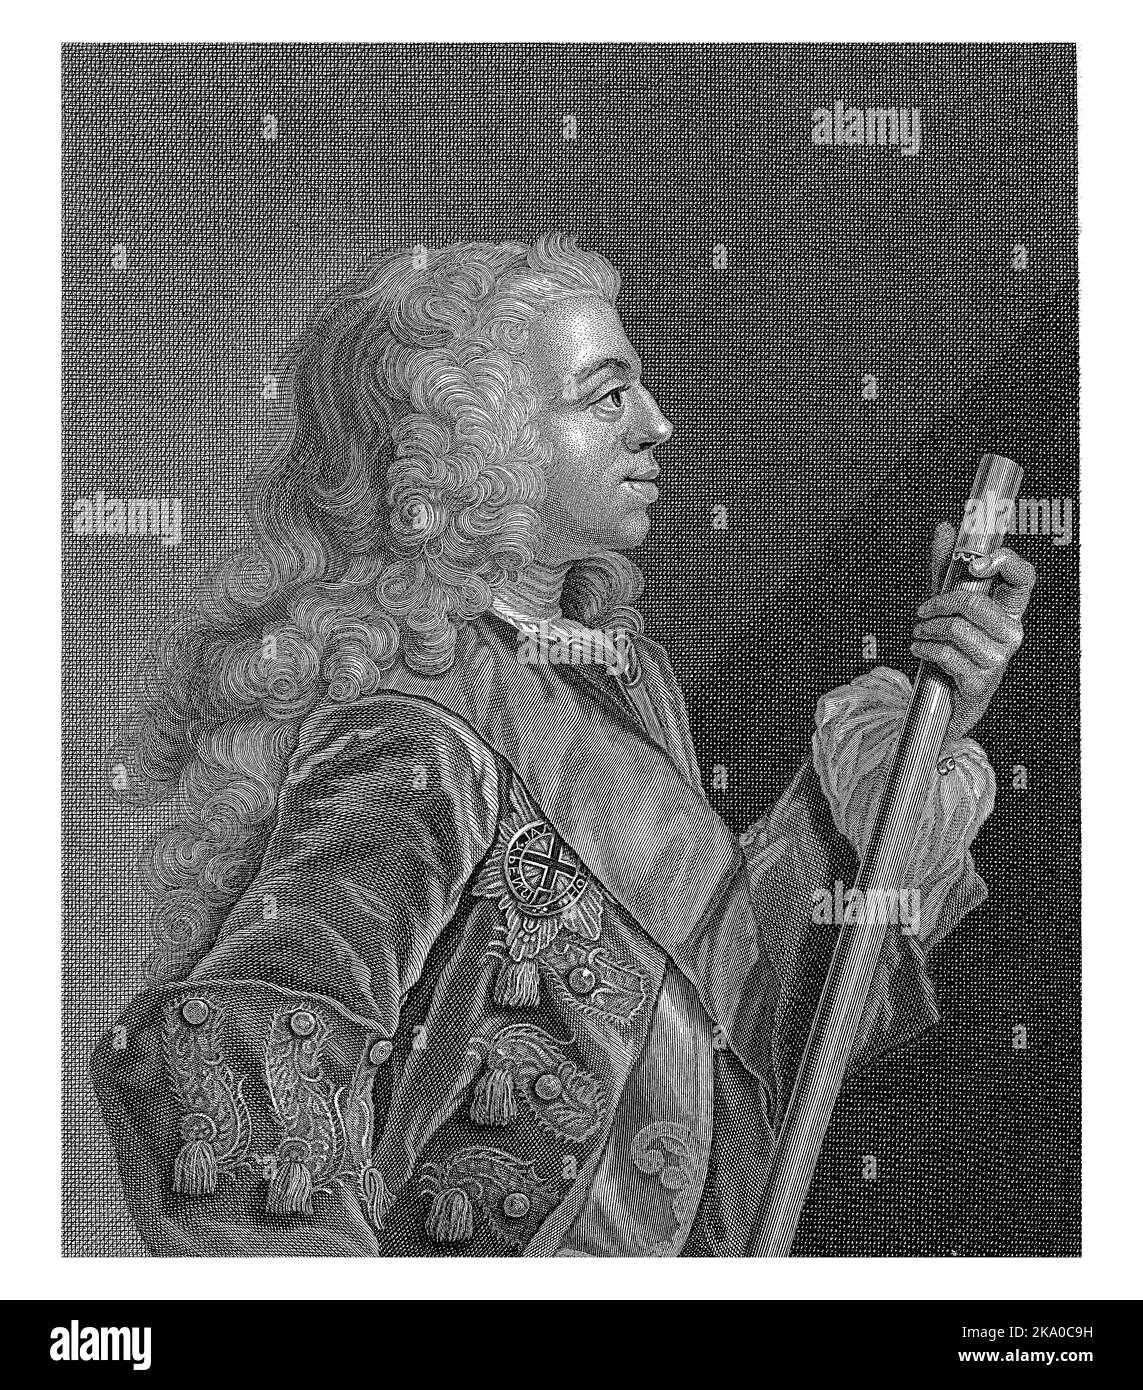 Portrait en demi-longueur de Willem Karel Hendrik Friso (Willem IV) van Oranje-Nassau. Le prince est représenté en profil avec un personnel de commandement en main. Banque D'Images